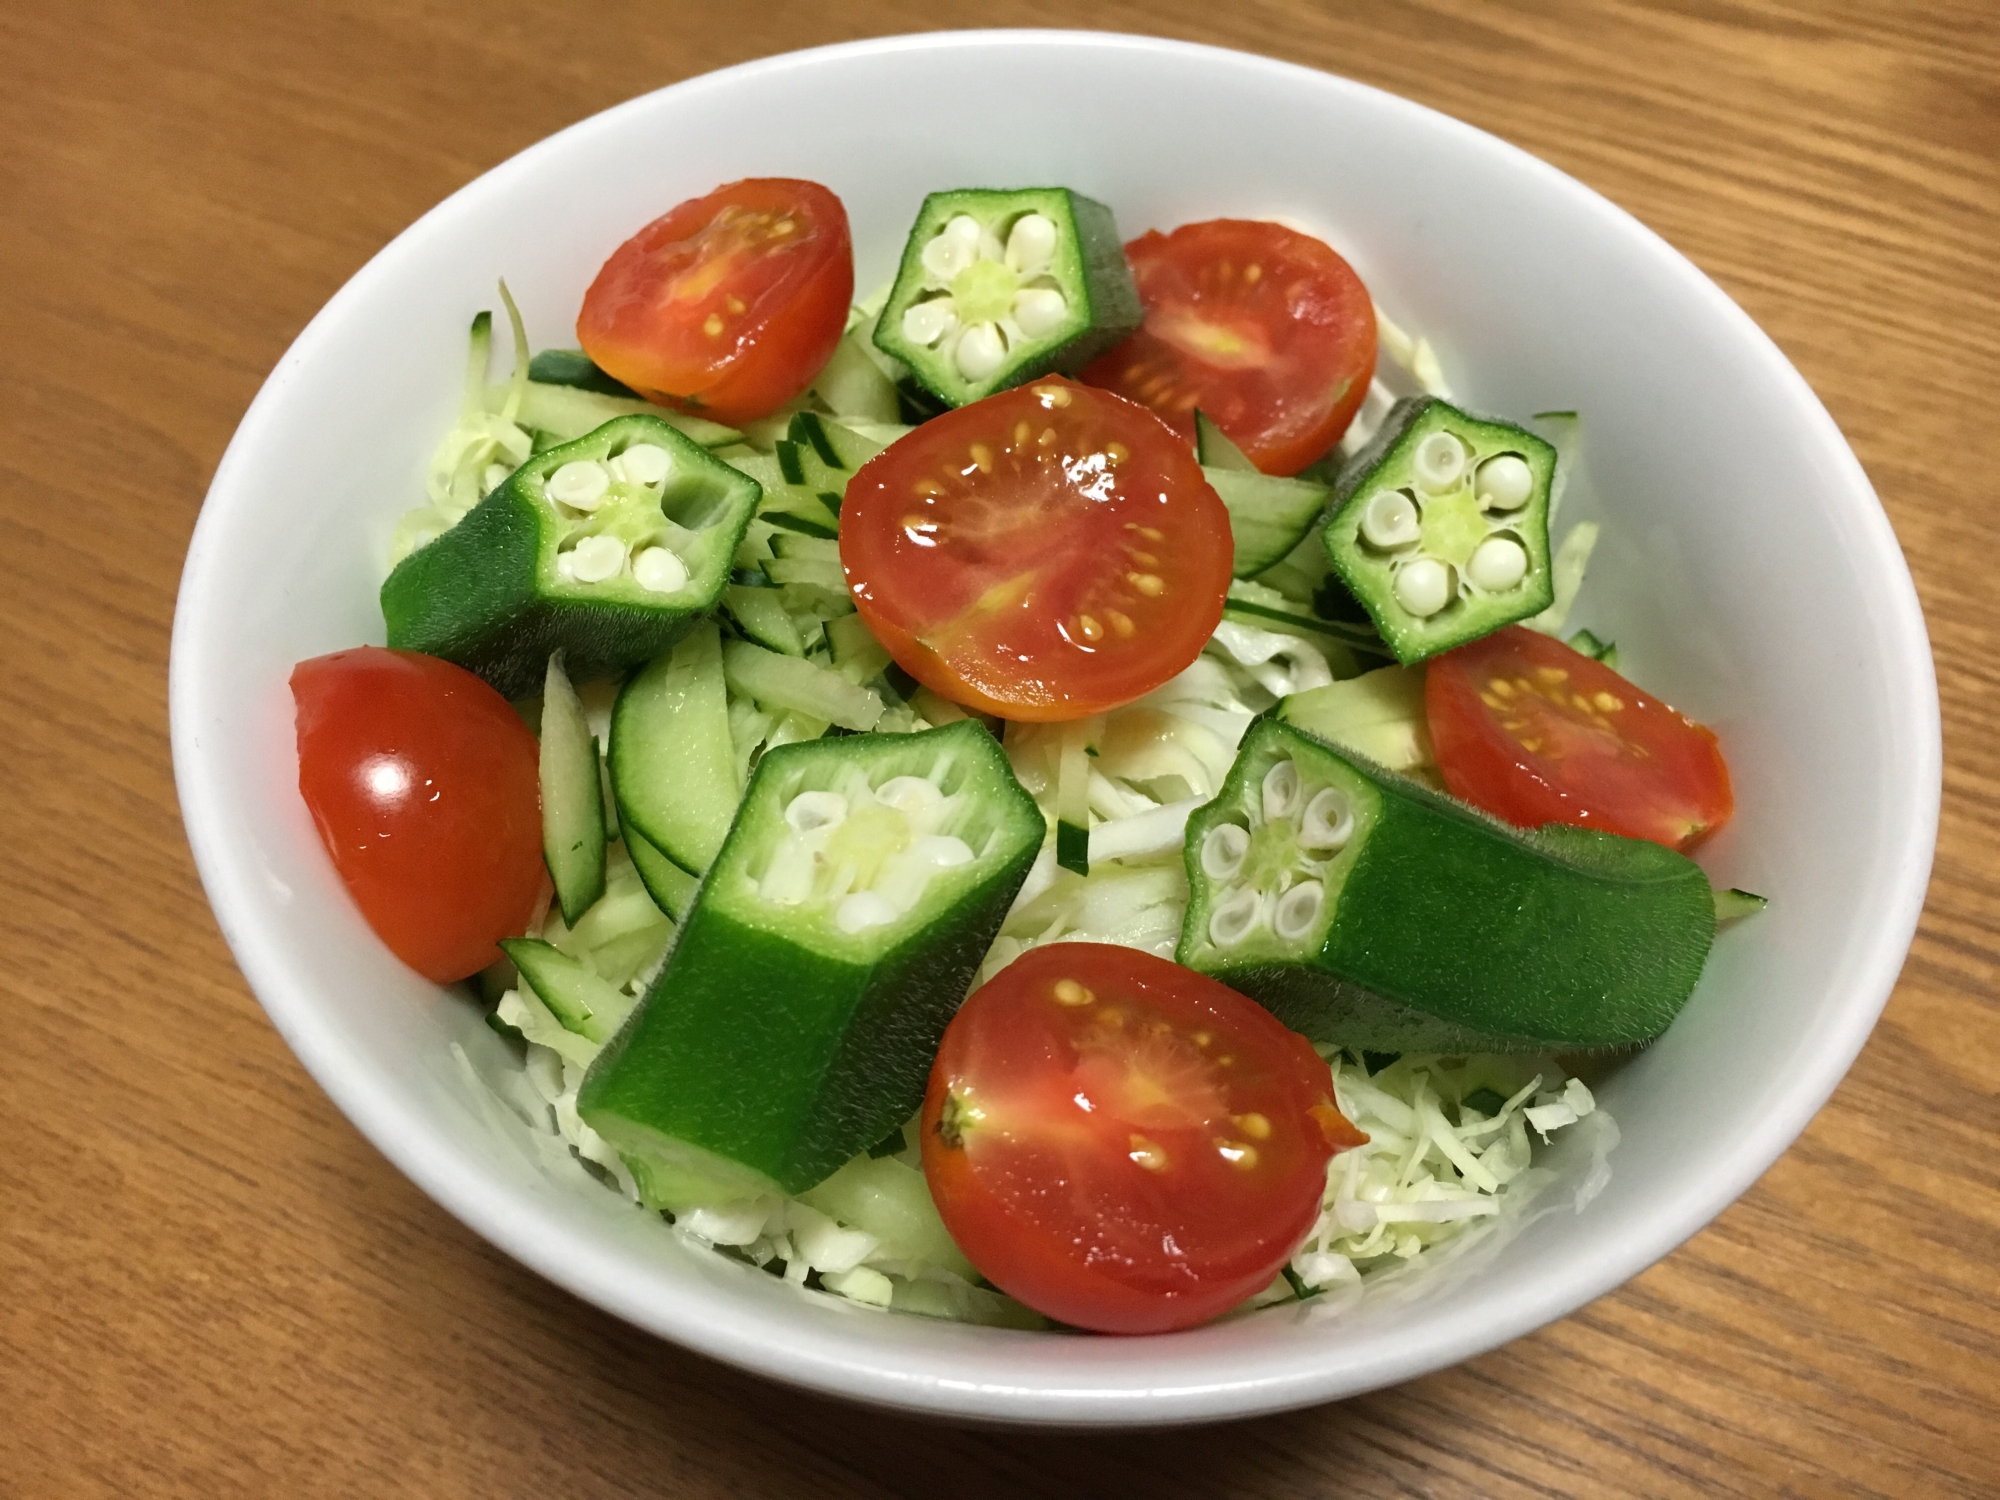 生野菜とオクラとミニトマトのサラダ